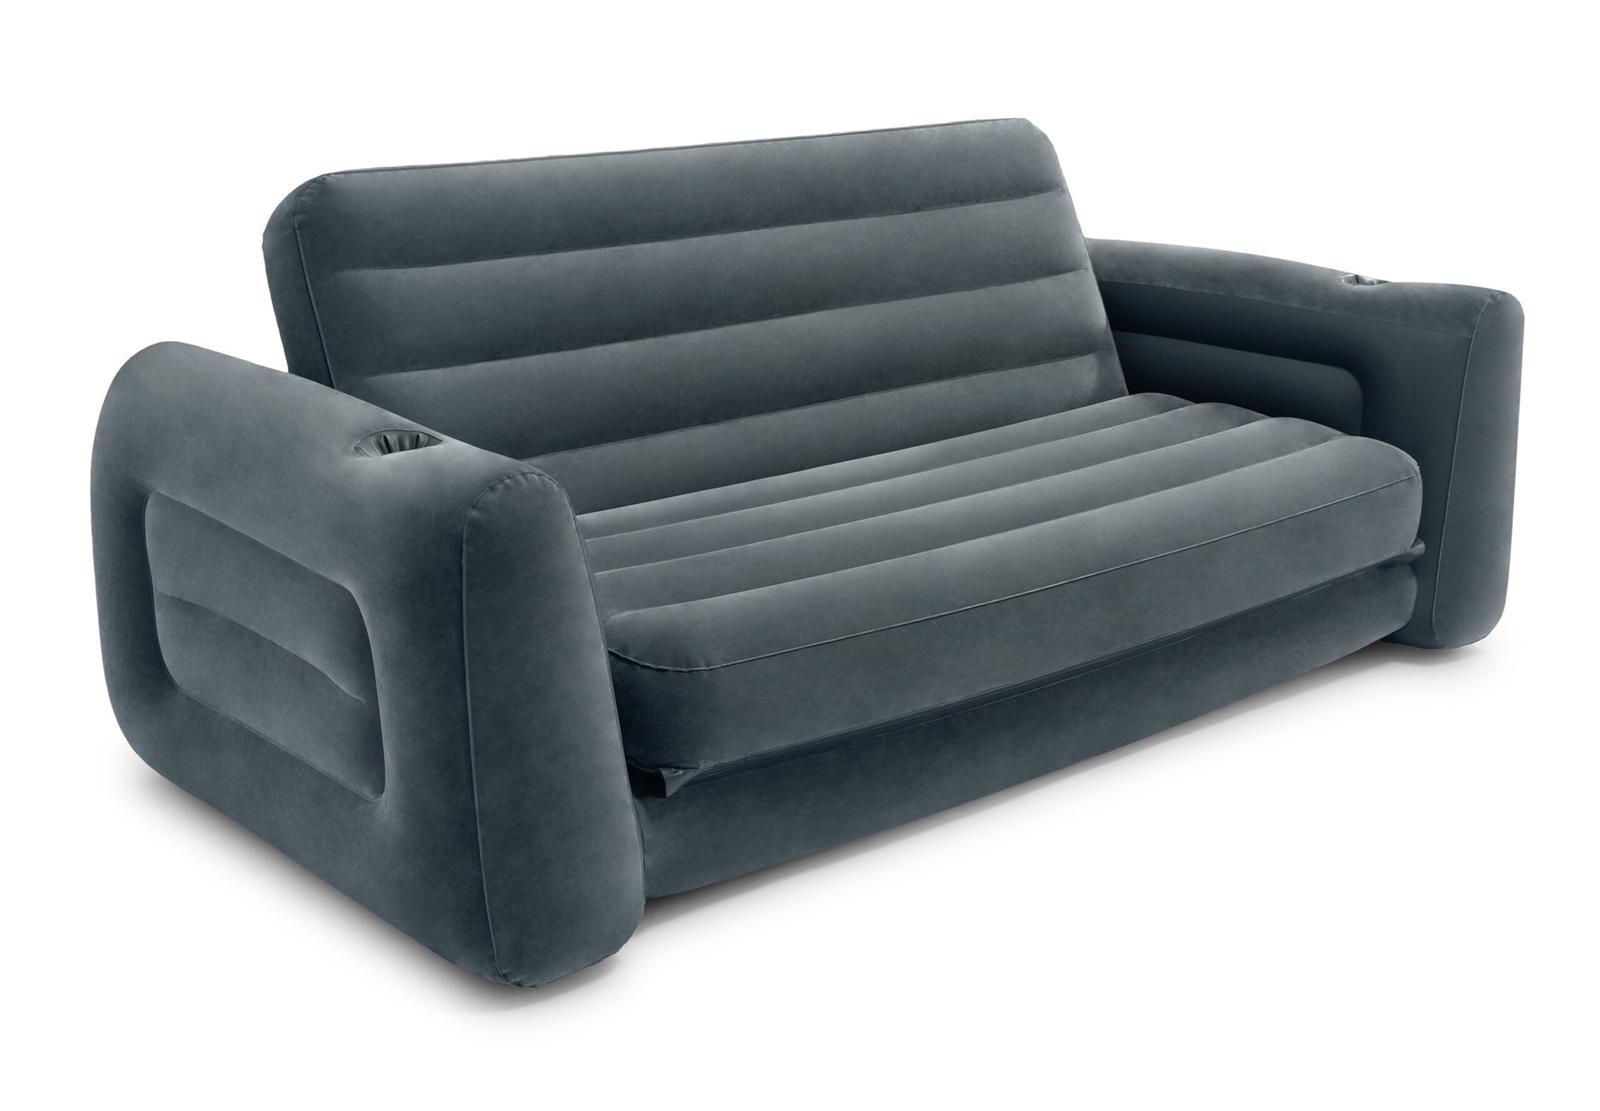 Sofa dmuchana rozkładana łóżko materac 2w1 INTEX 66552 nr. 1